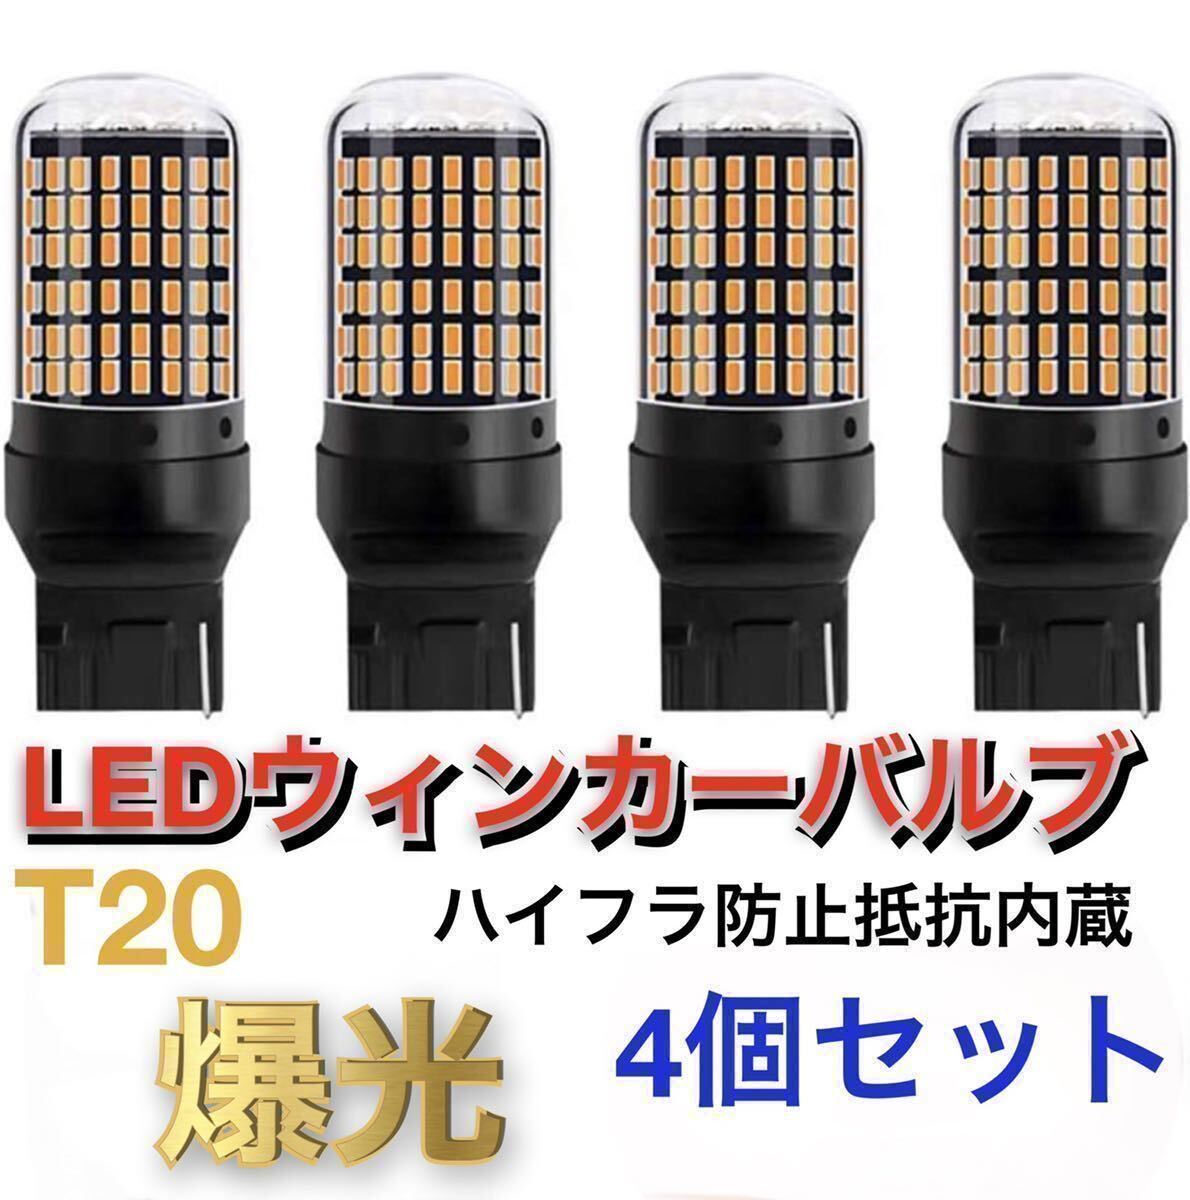 新製品 LED T20 ウインカー オレンジ色 ハイフラ防止抵抗内蔵 ピンチ部違い対応 4個セット アンバー 12v LEDバルブ の画像1